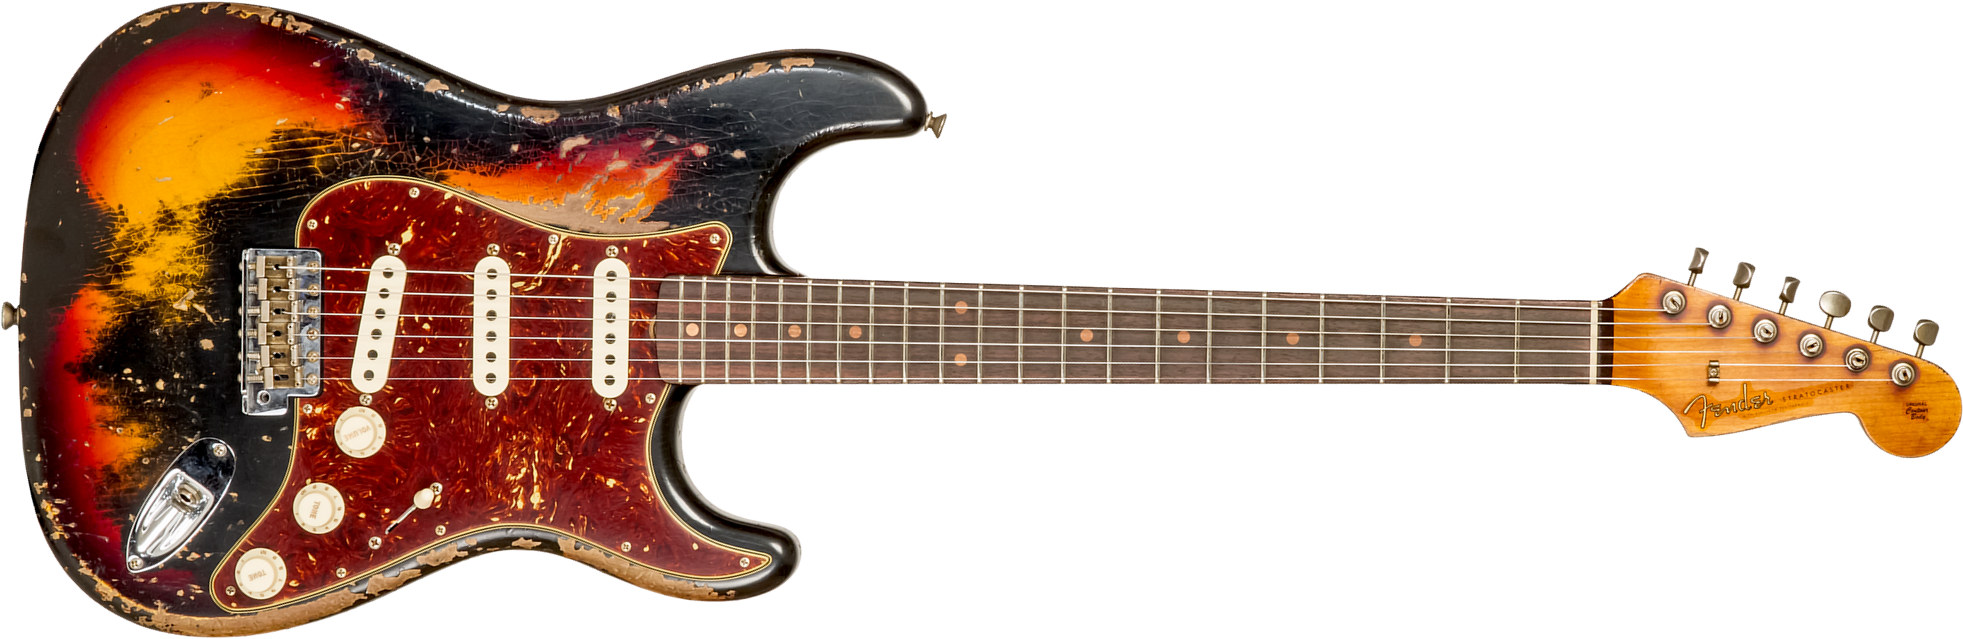 Fender Custom Shop Strat 1961 3s Trem Rw #cz576153 - Super Heavy Relic Black O. 3-color Sunburst - Guitare Électrique Forme Str - Main picture